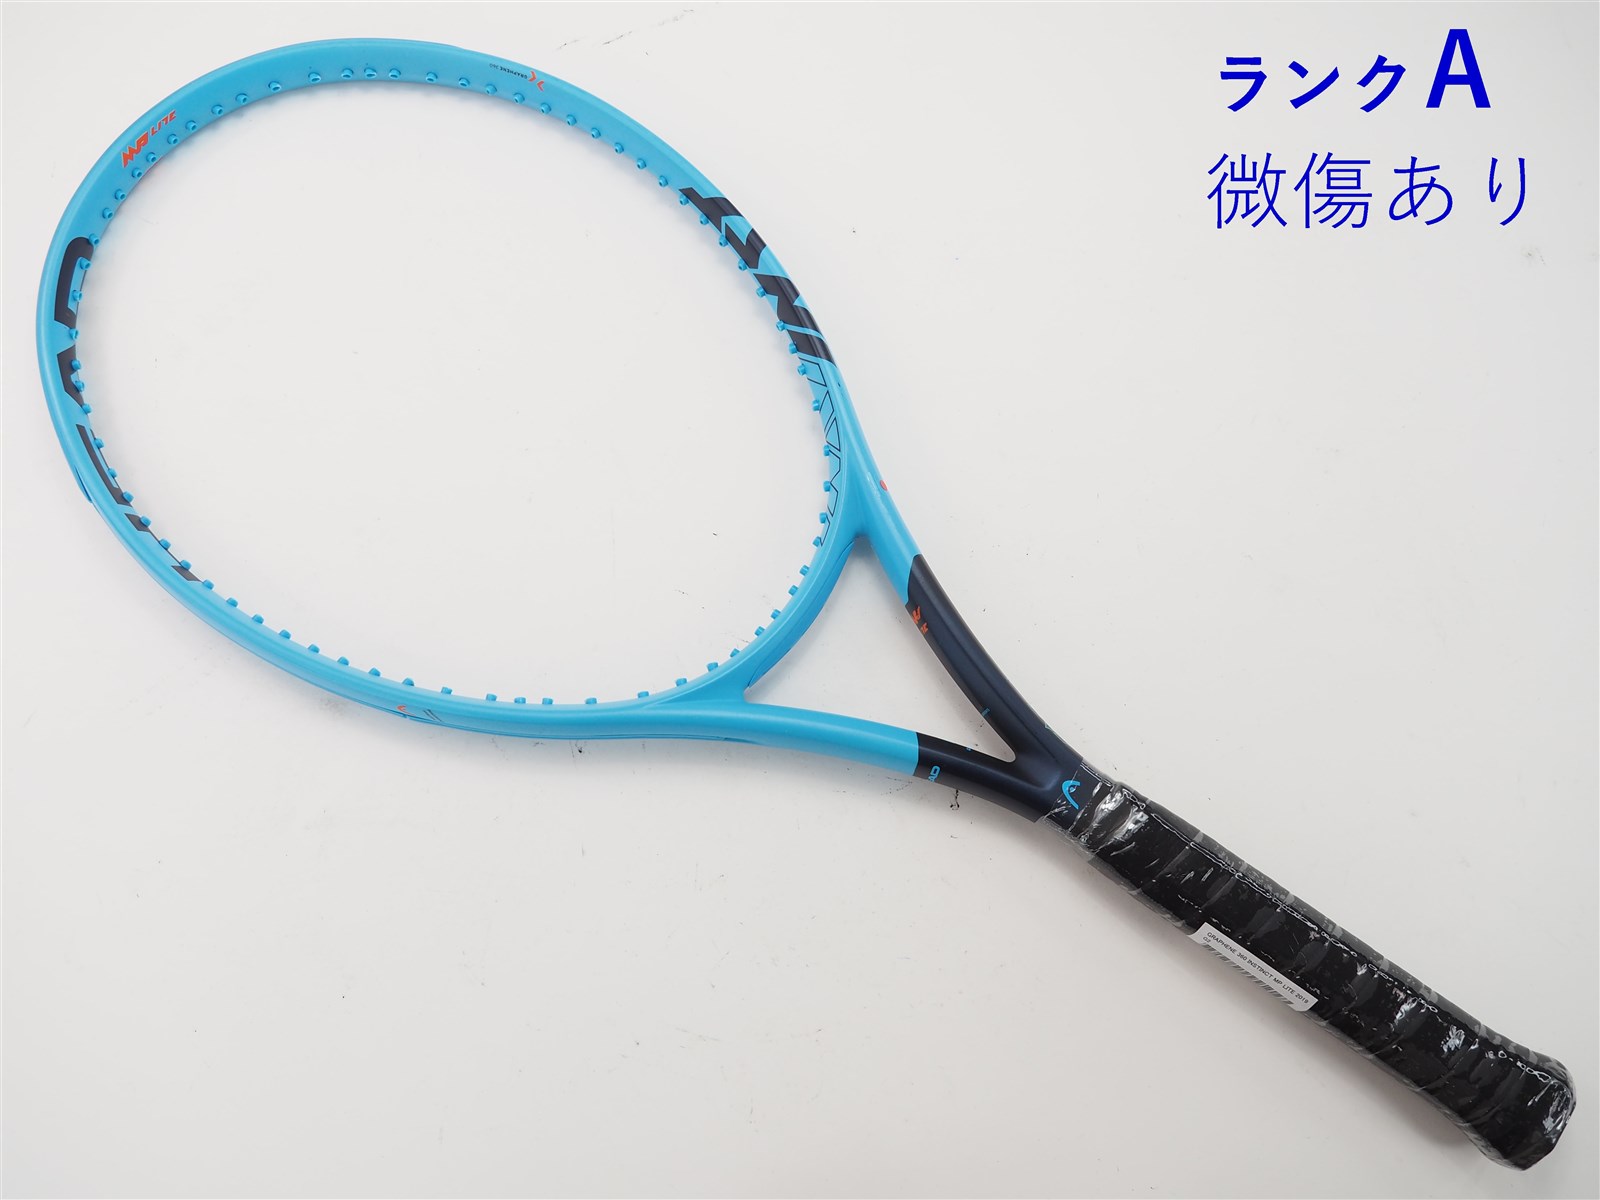 テニスラケット ヘッド グラフィン 360 インスティンクト MP ライト